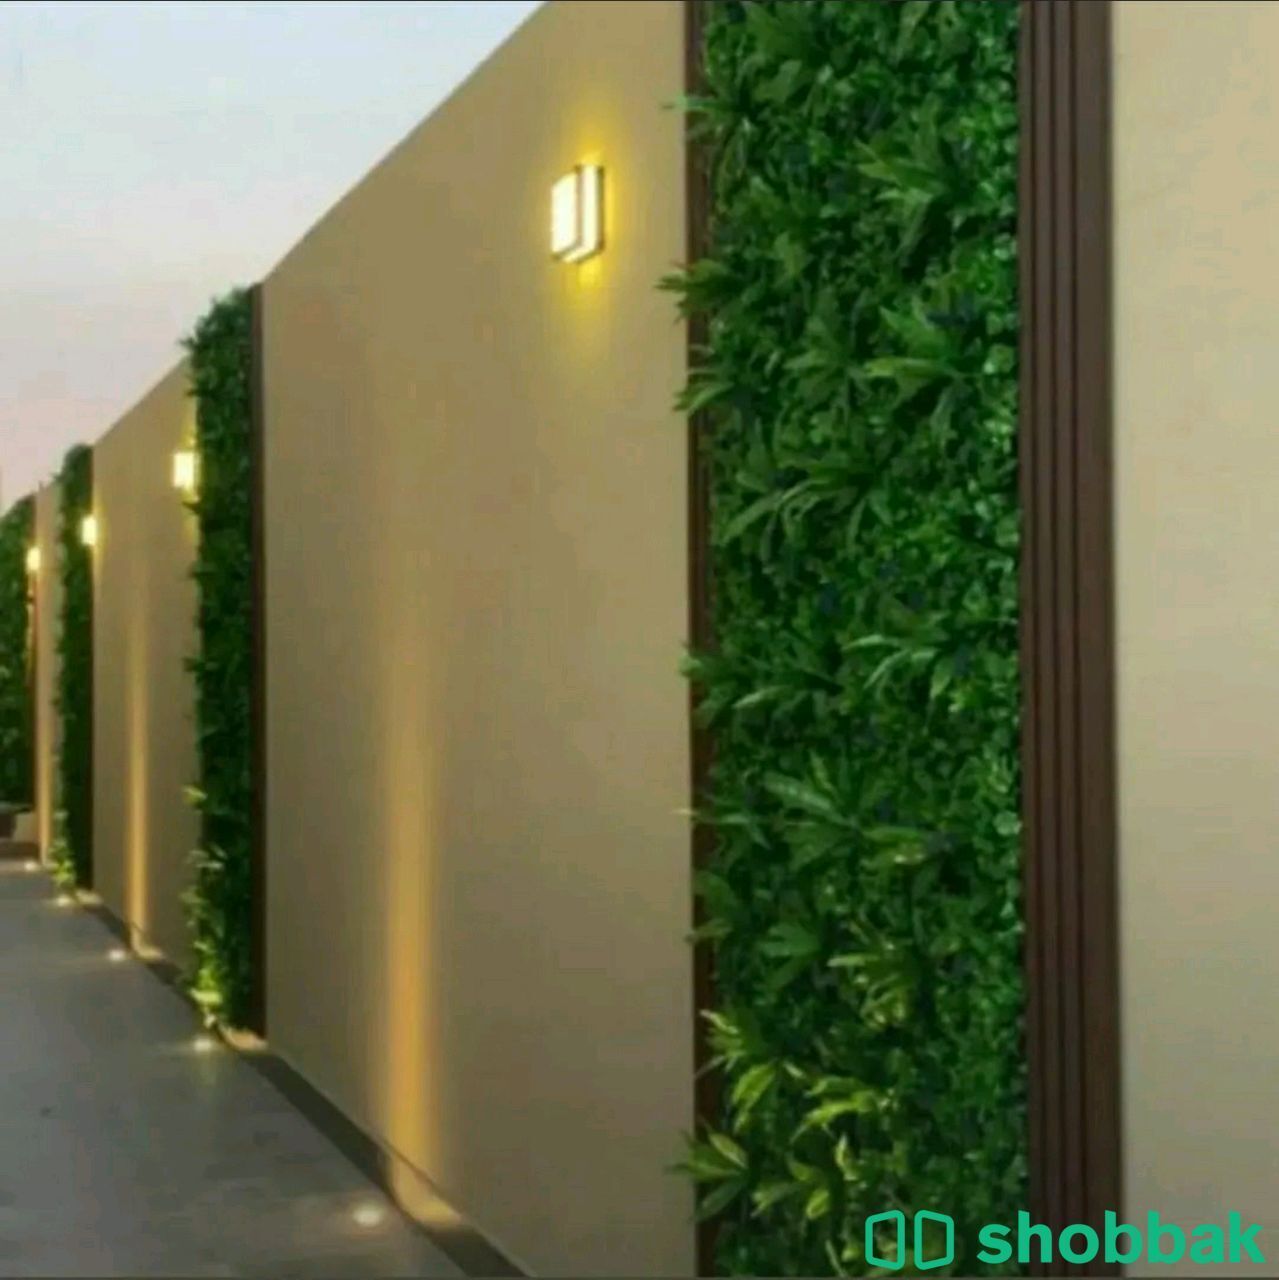 حدائق_منزلية  شباك السعودية